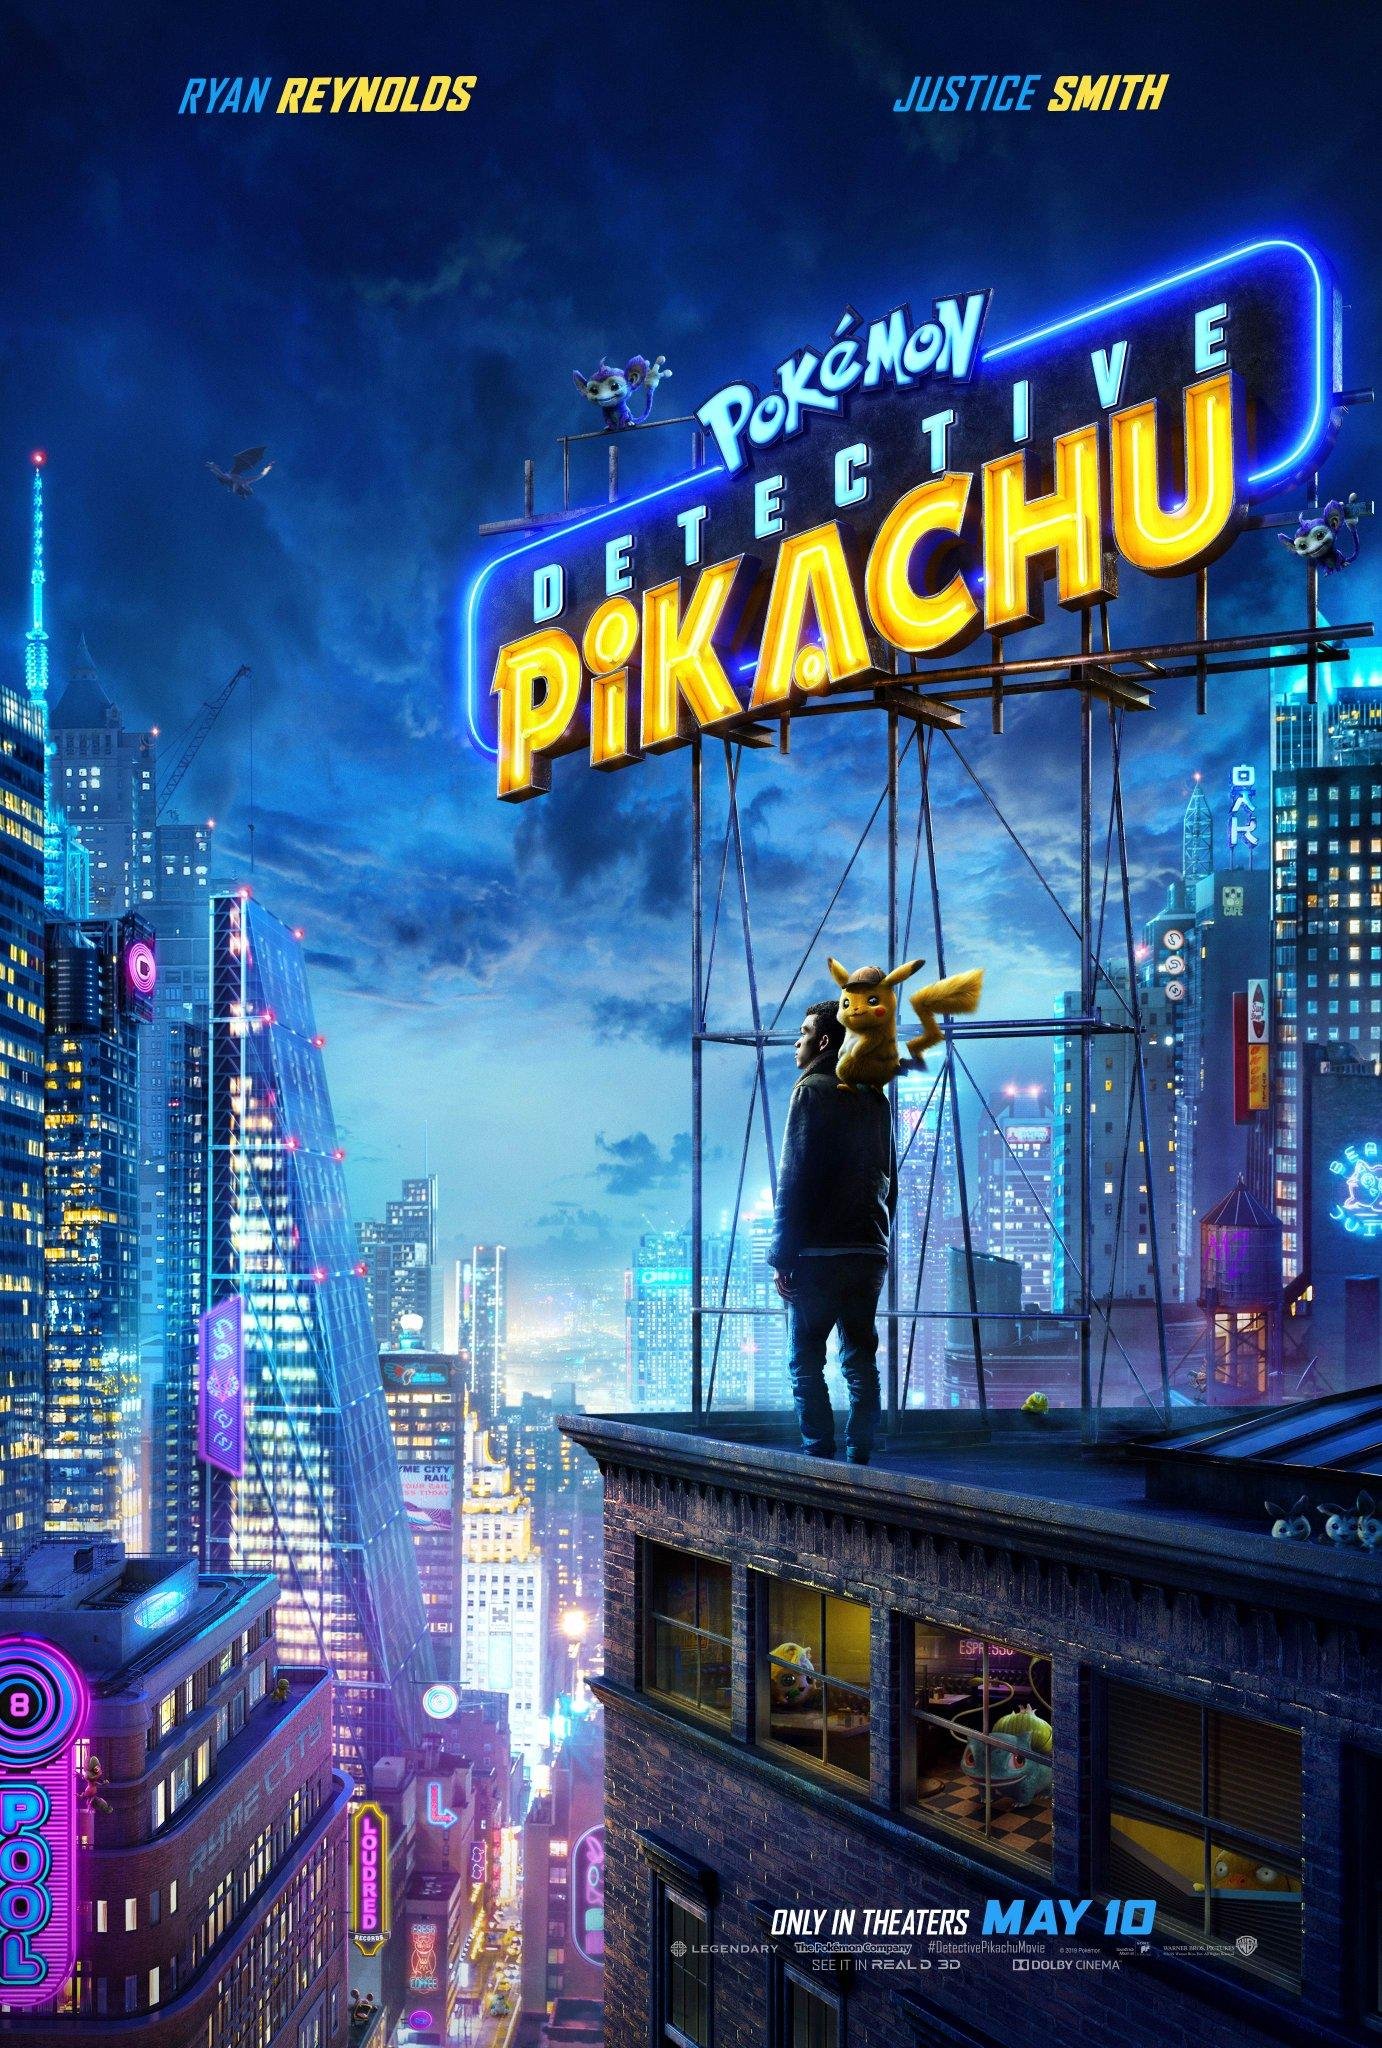 Pikachu enfrenta Mewtwo no novo trailer dublado do Pokémon